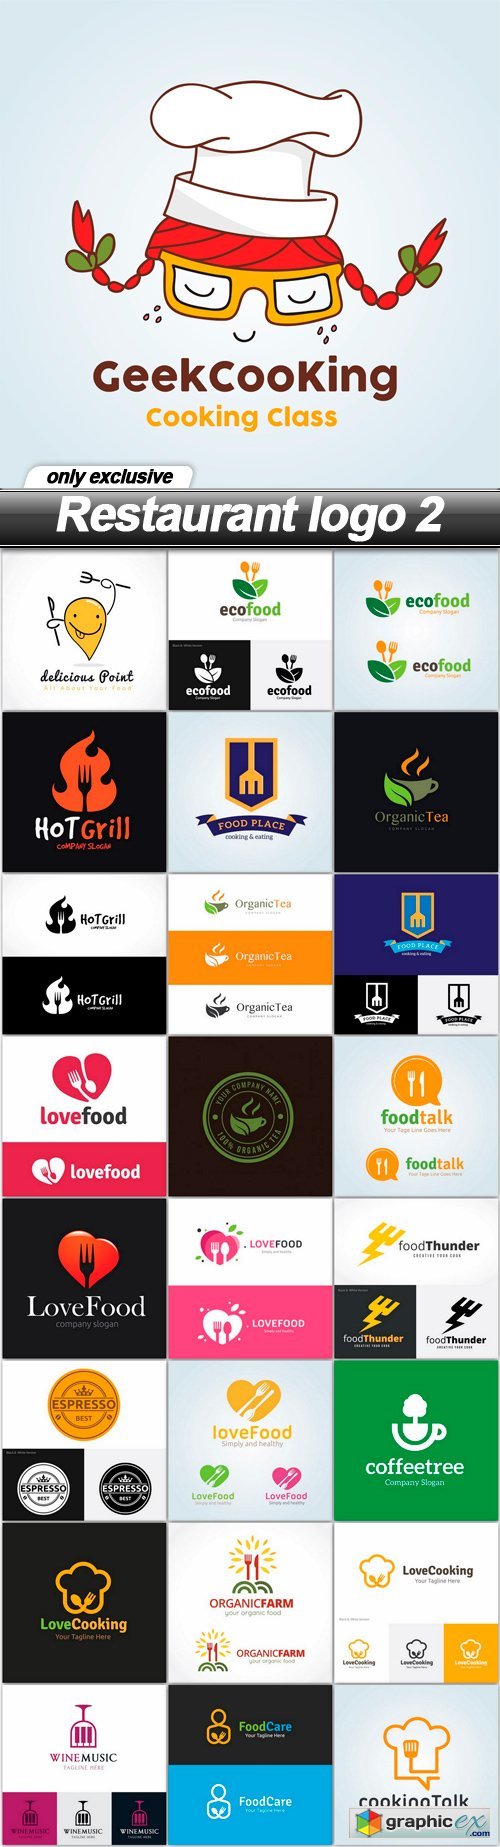 Restaurant logo 2 - 25 EPS